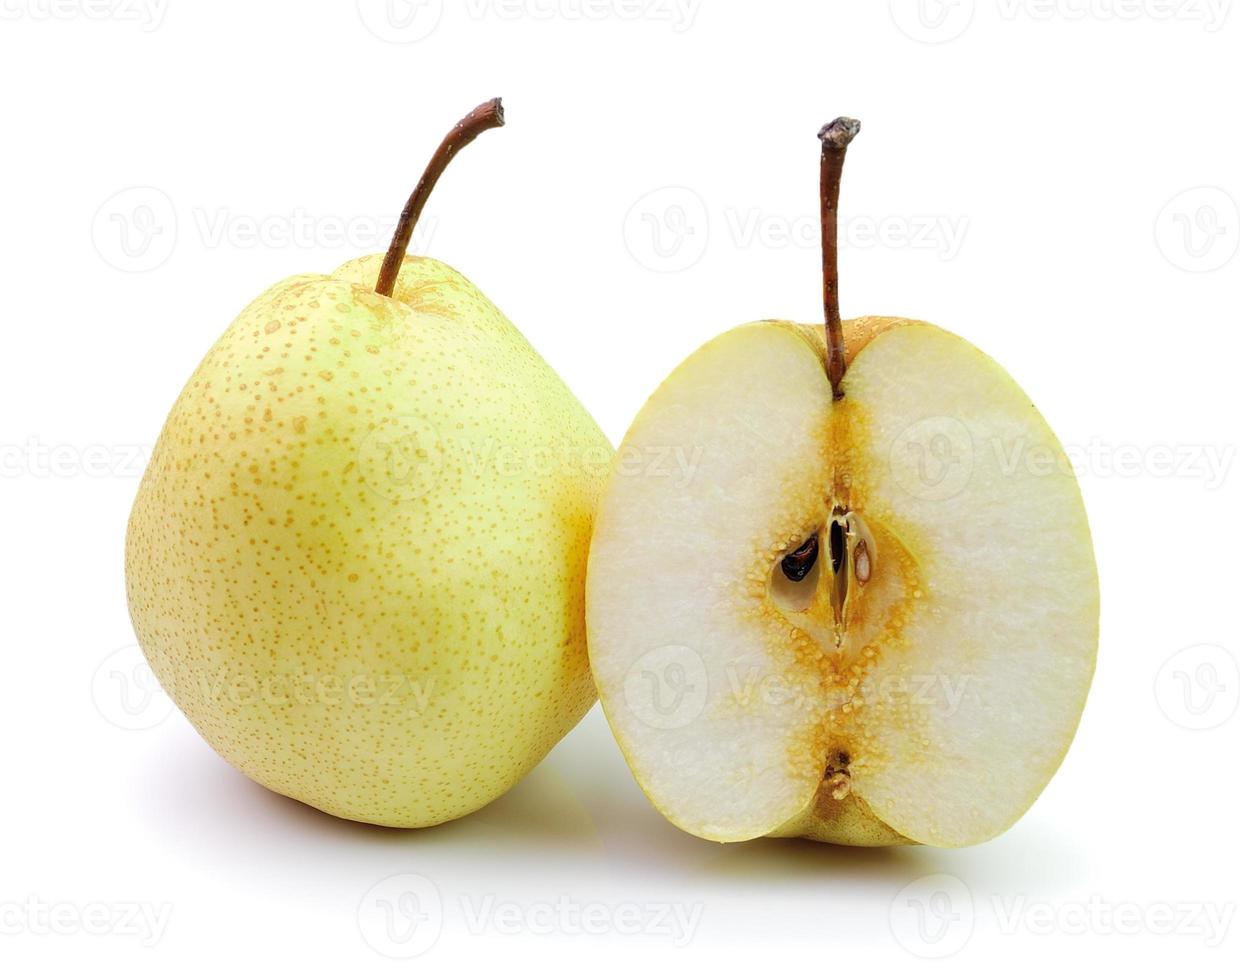 päron i närbild på en vit bakgrund foto